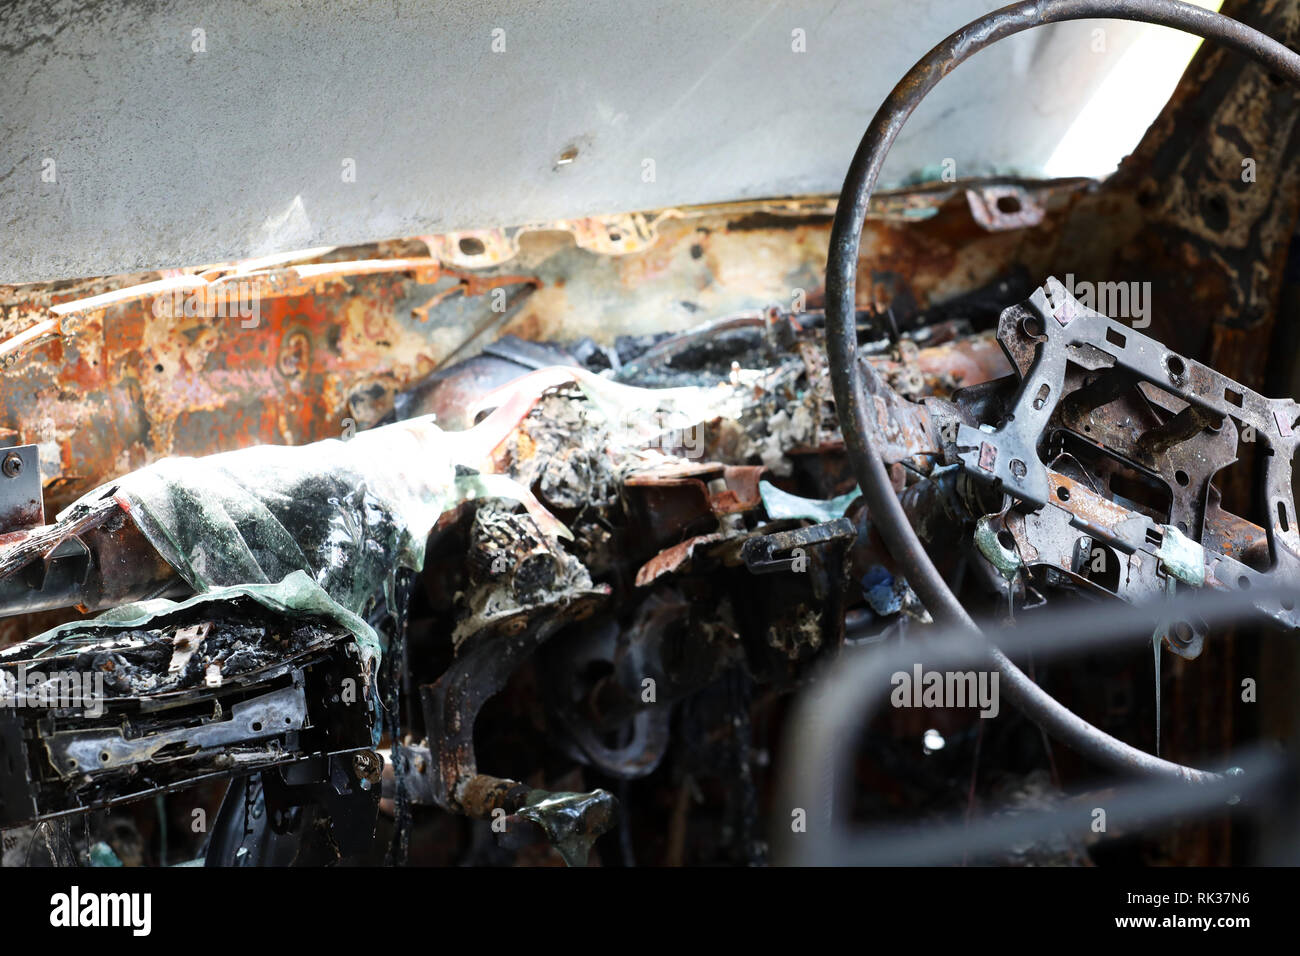 À l'intérieur de Burnt Out épave de voiture volée. Scène de crime de droit de l'intérieur du véhicule ruiné par le feu ou d'incendie. plastique fondu et de métal et volant Banque D'Images